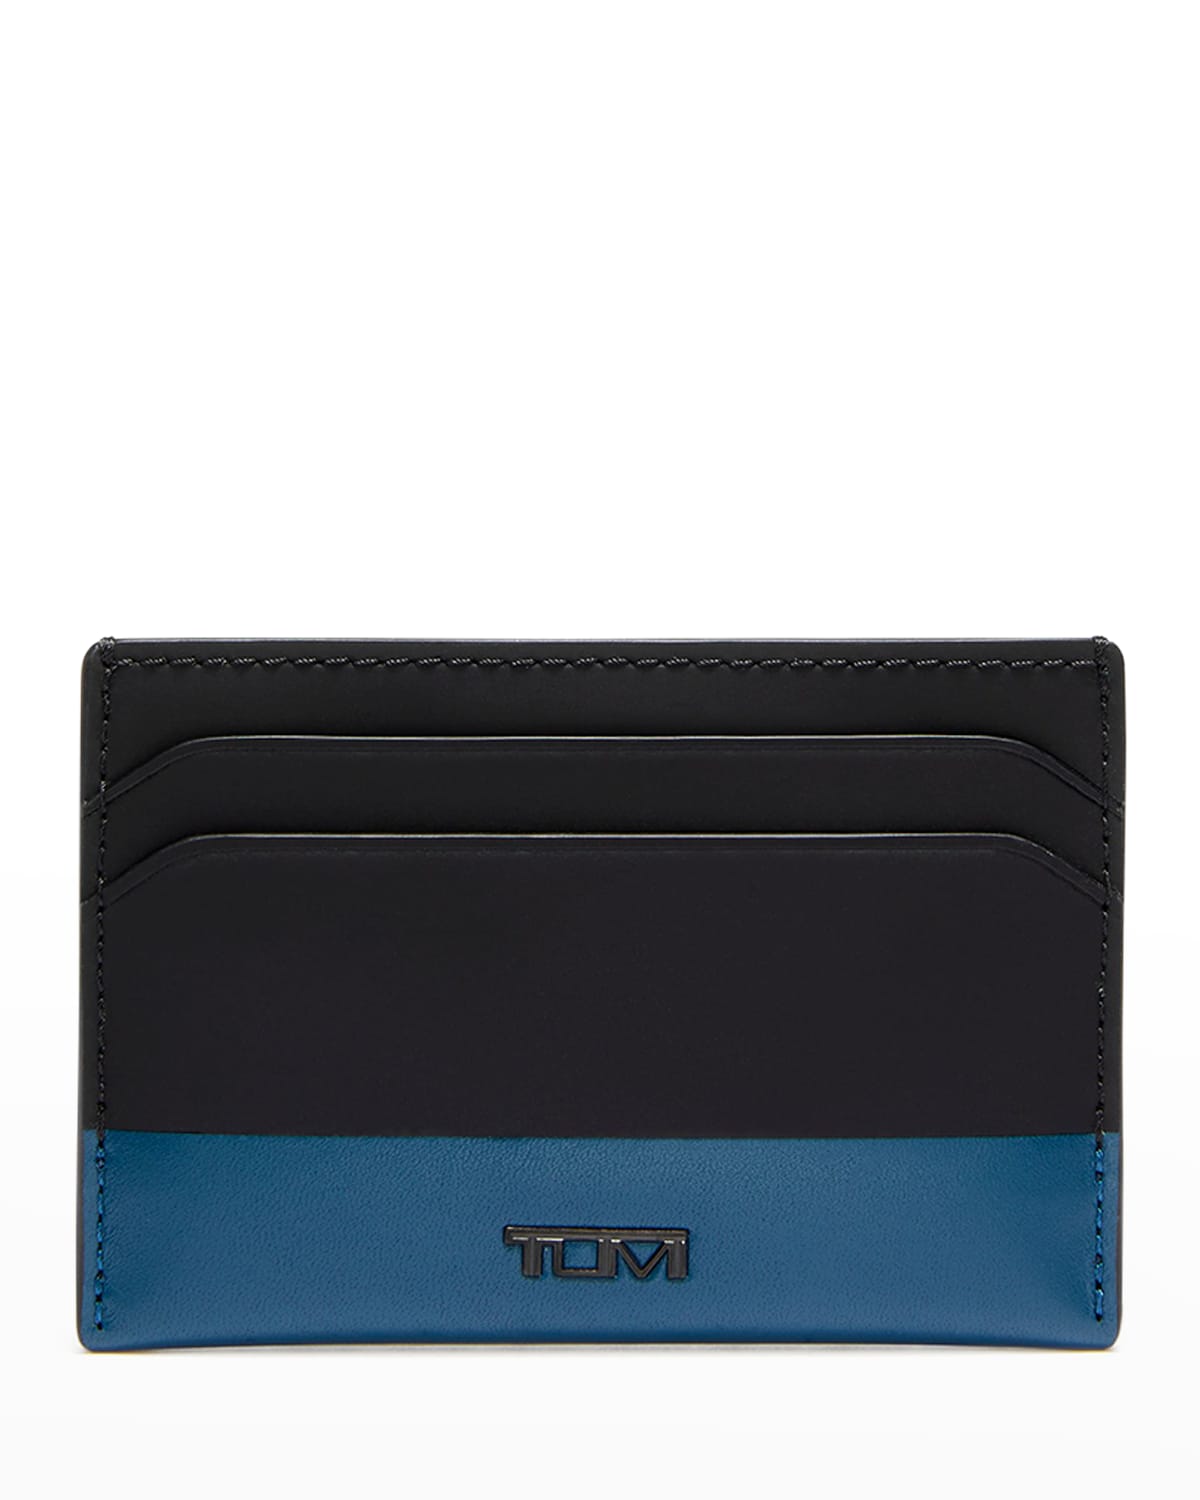 Tumi Slim Card Case In Turquoise/black